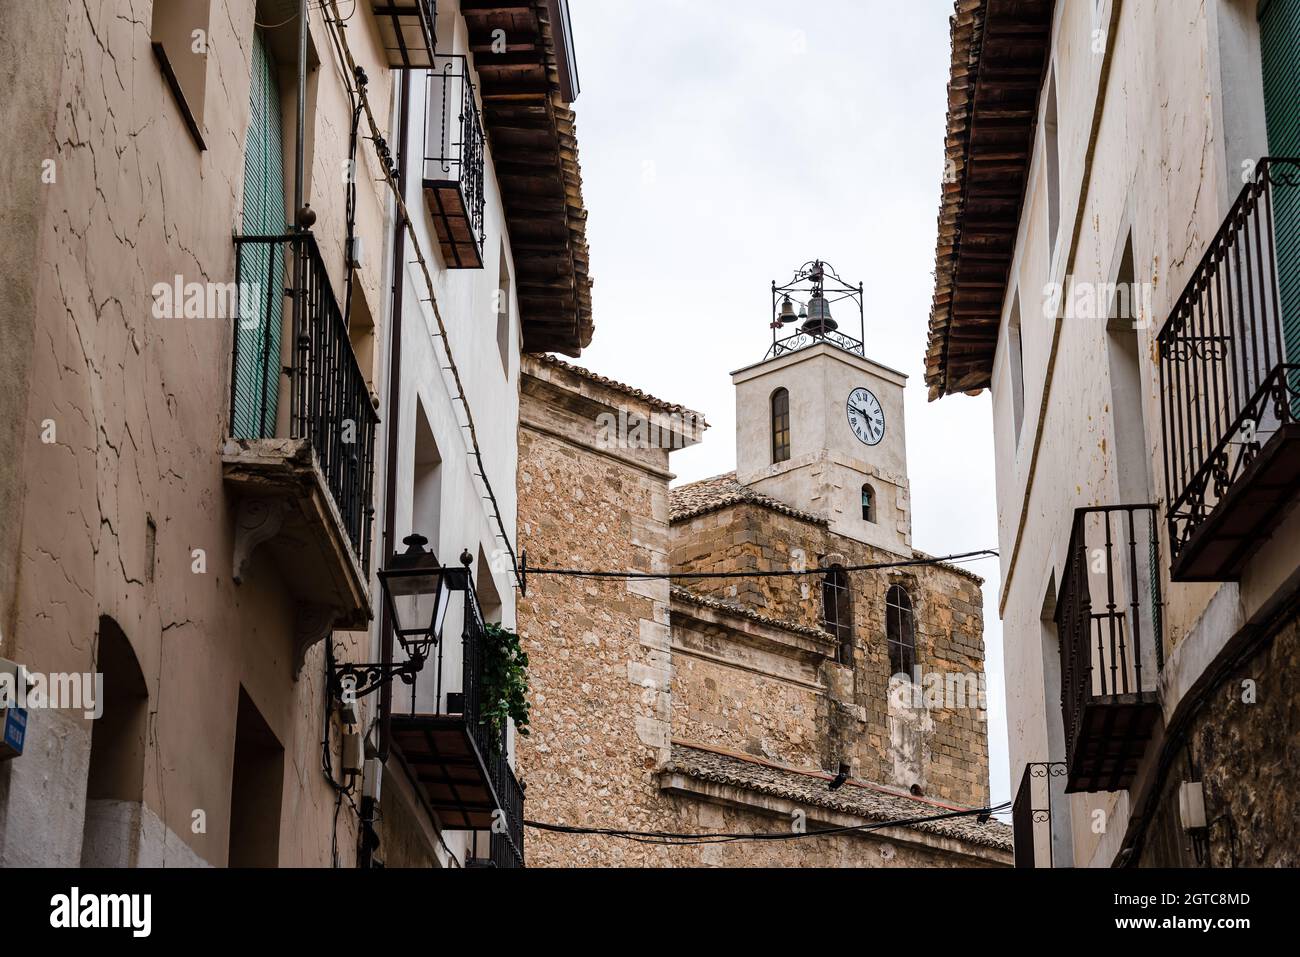 Vista de las calles de la ciudad medieval de Pastrana con la torre del reloj de la iglesia. La Alcarria Foto de stock